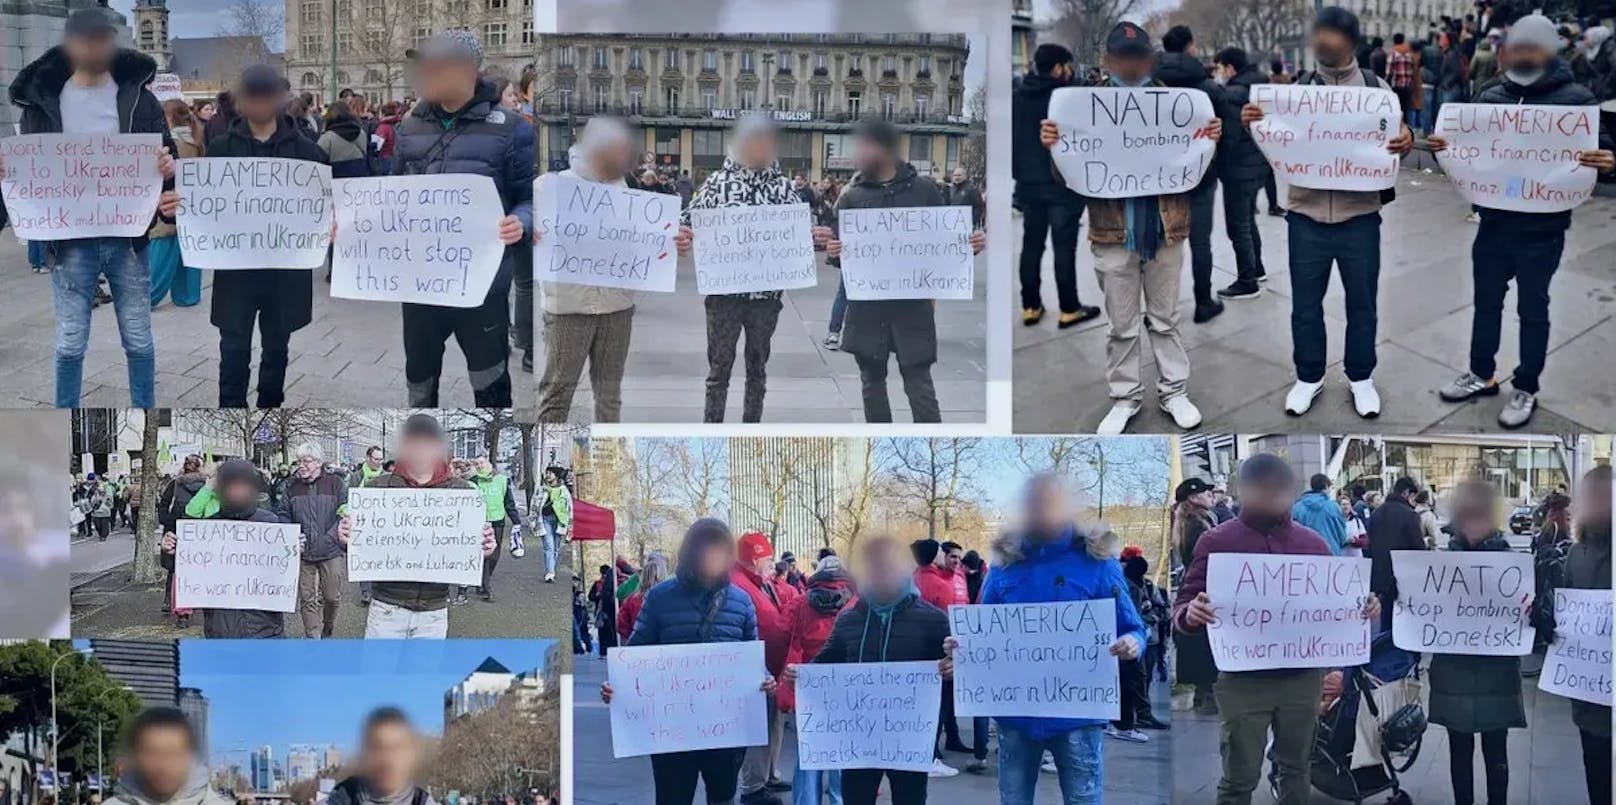 Die Fotos zeigen angebliche ukrainische Demonstranten – ihre Plakate weisen die immer selben Parolen auf, die Stimmung gegen den Westen und seine Partner machen sollen.&nbsp;